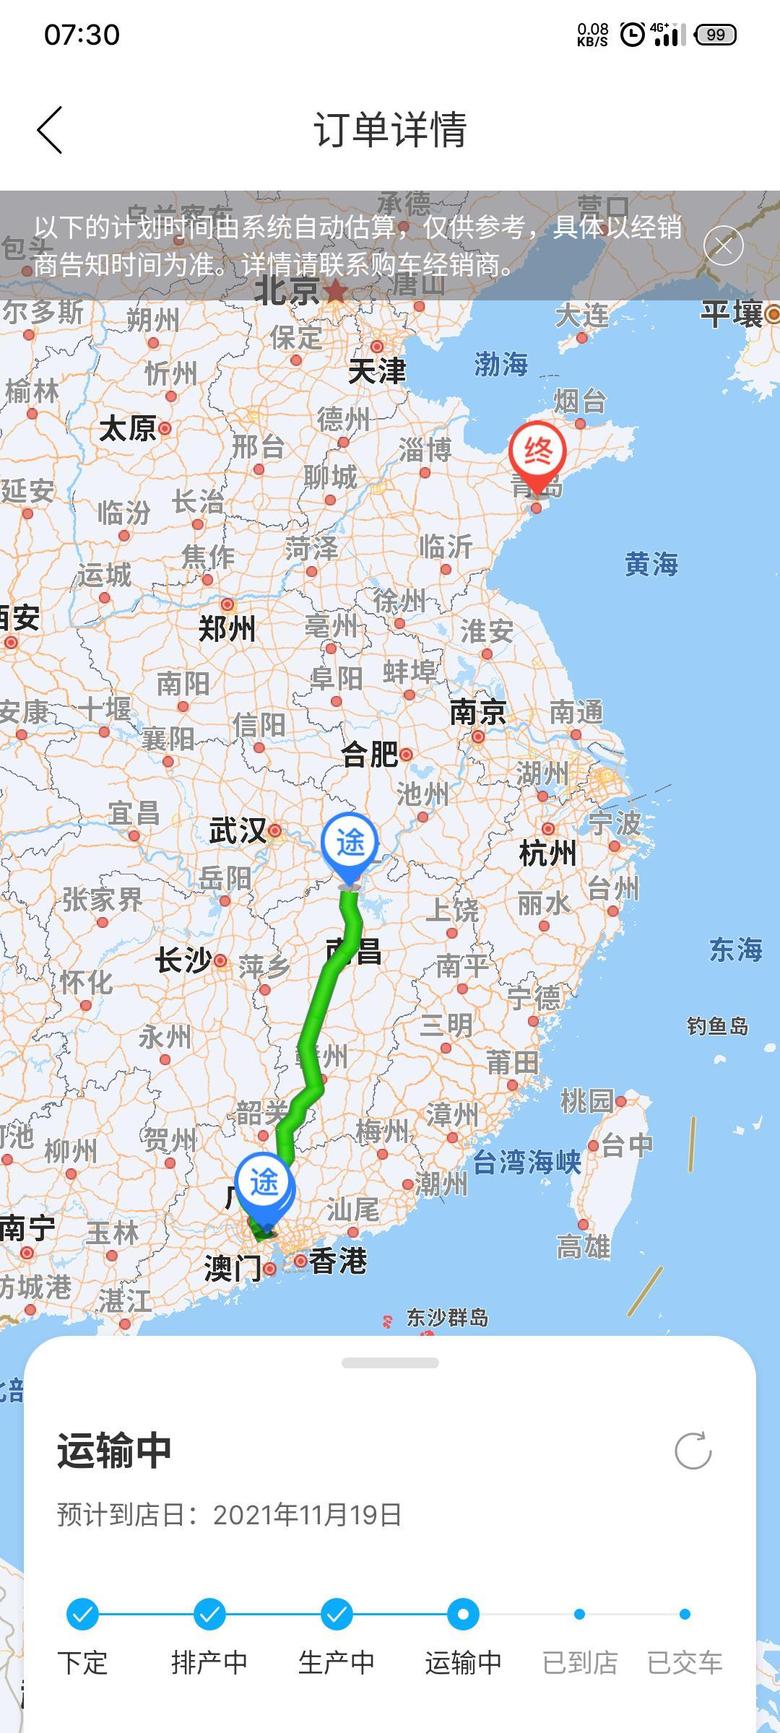 汉兰达 到江西九江了，估计再有两天就能到店。。。